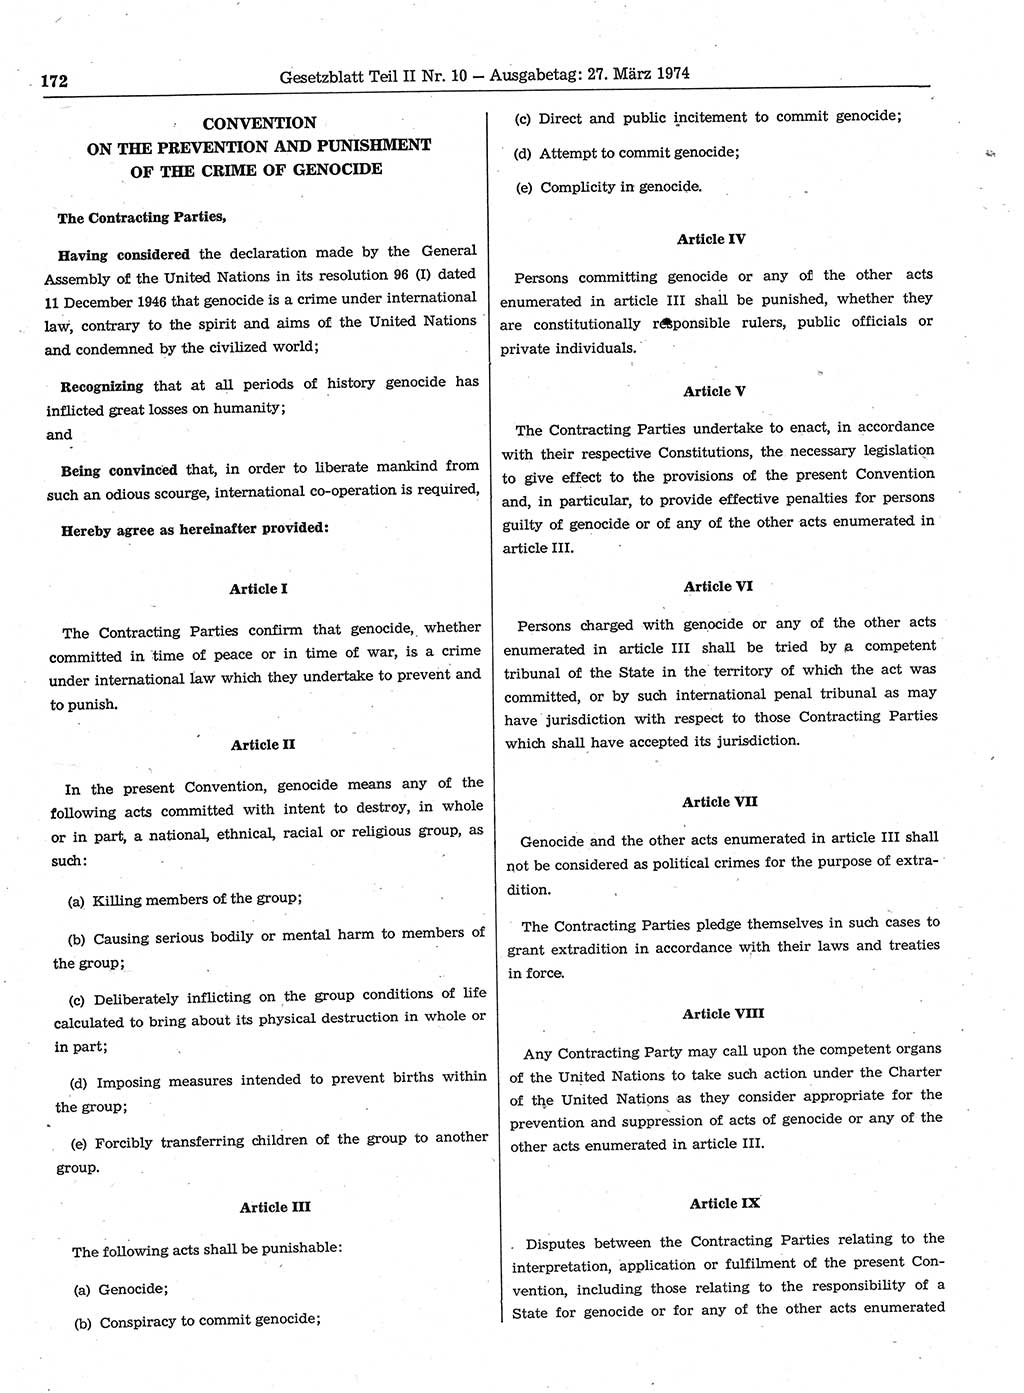 Gesetzblatt (GBl.) der Deutschen Demokratischen Republik (DDR) Teil ⅠⅠ 1974, Seite 172 (GBl. DDR ⅠⅠ 1974, S. 172)